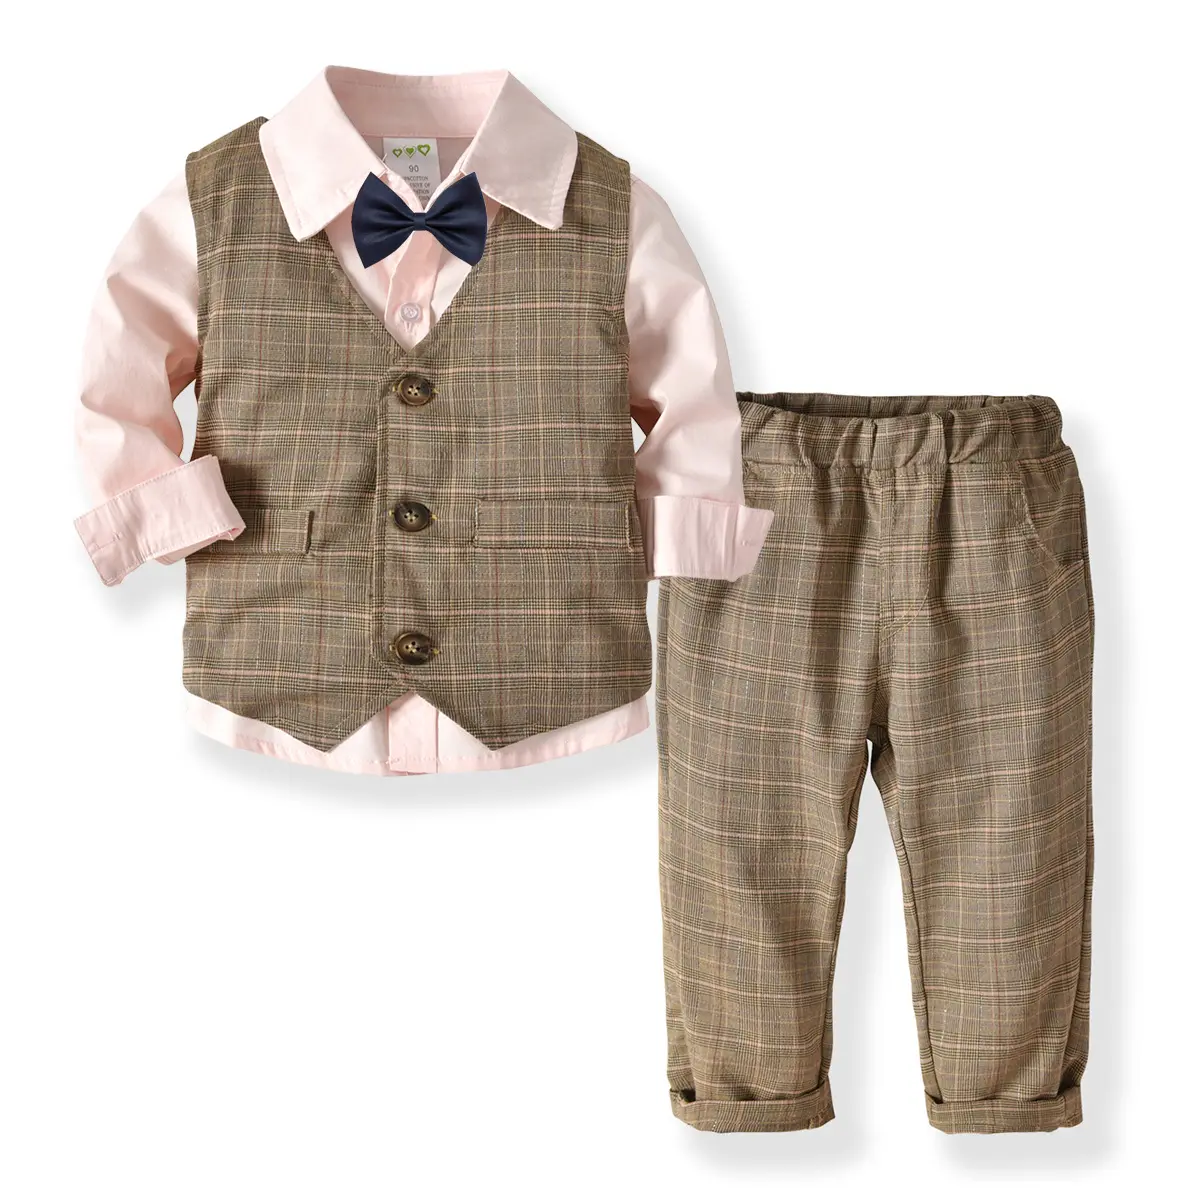 Hot Sale Autumn Infant Boys Clothes Suit Shirt+Vest+Pants+Tie 4PCS Gentleman Outfits Boy Clothing Sets 19A310